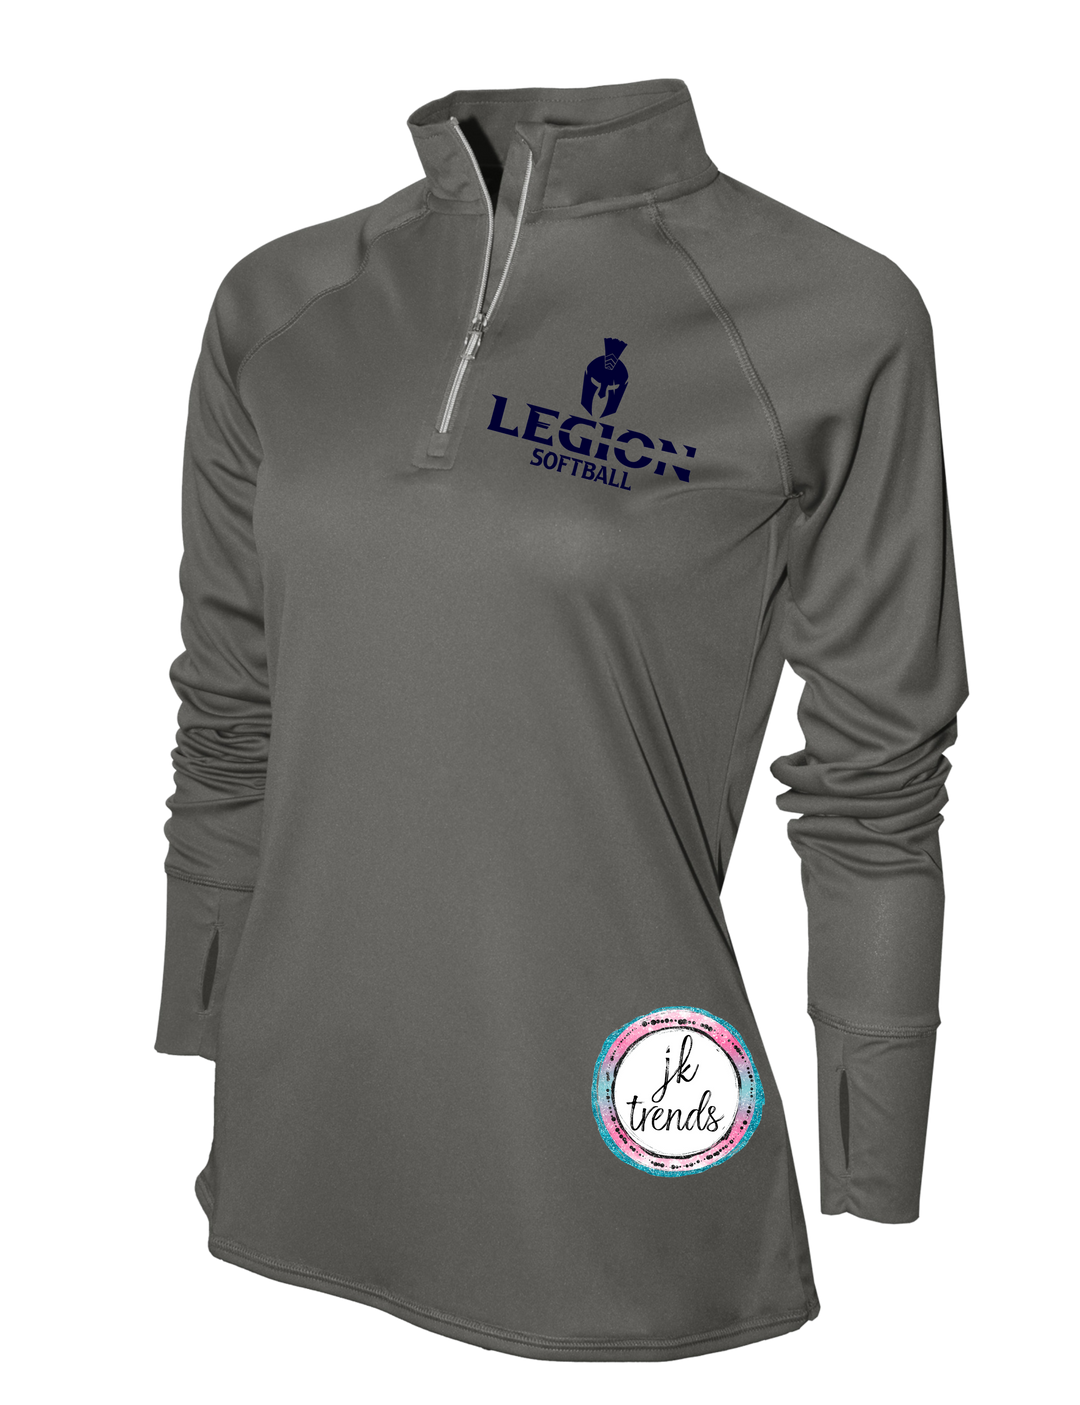 Legion Softball Ladies Light Runner Pullover